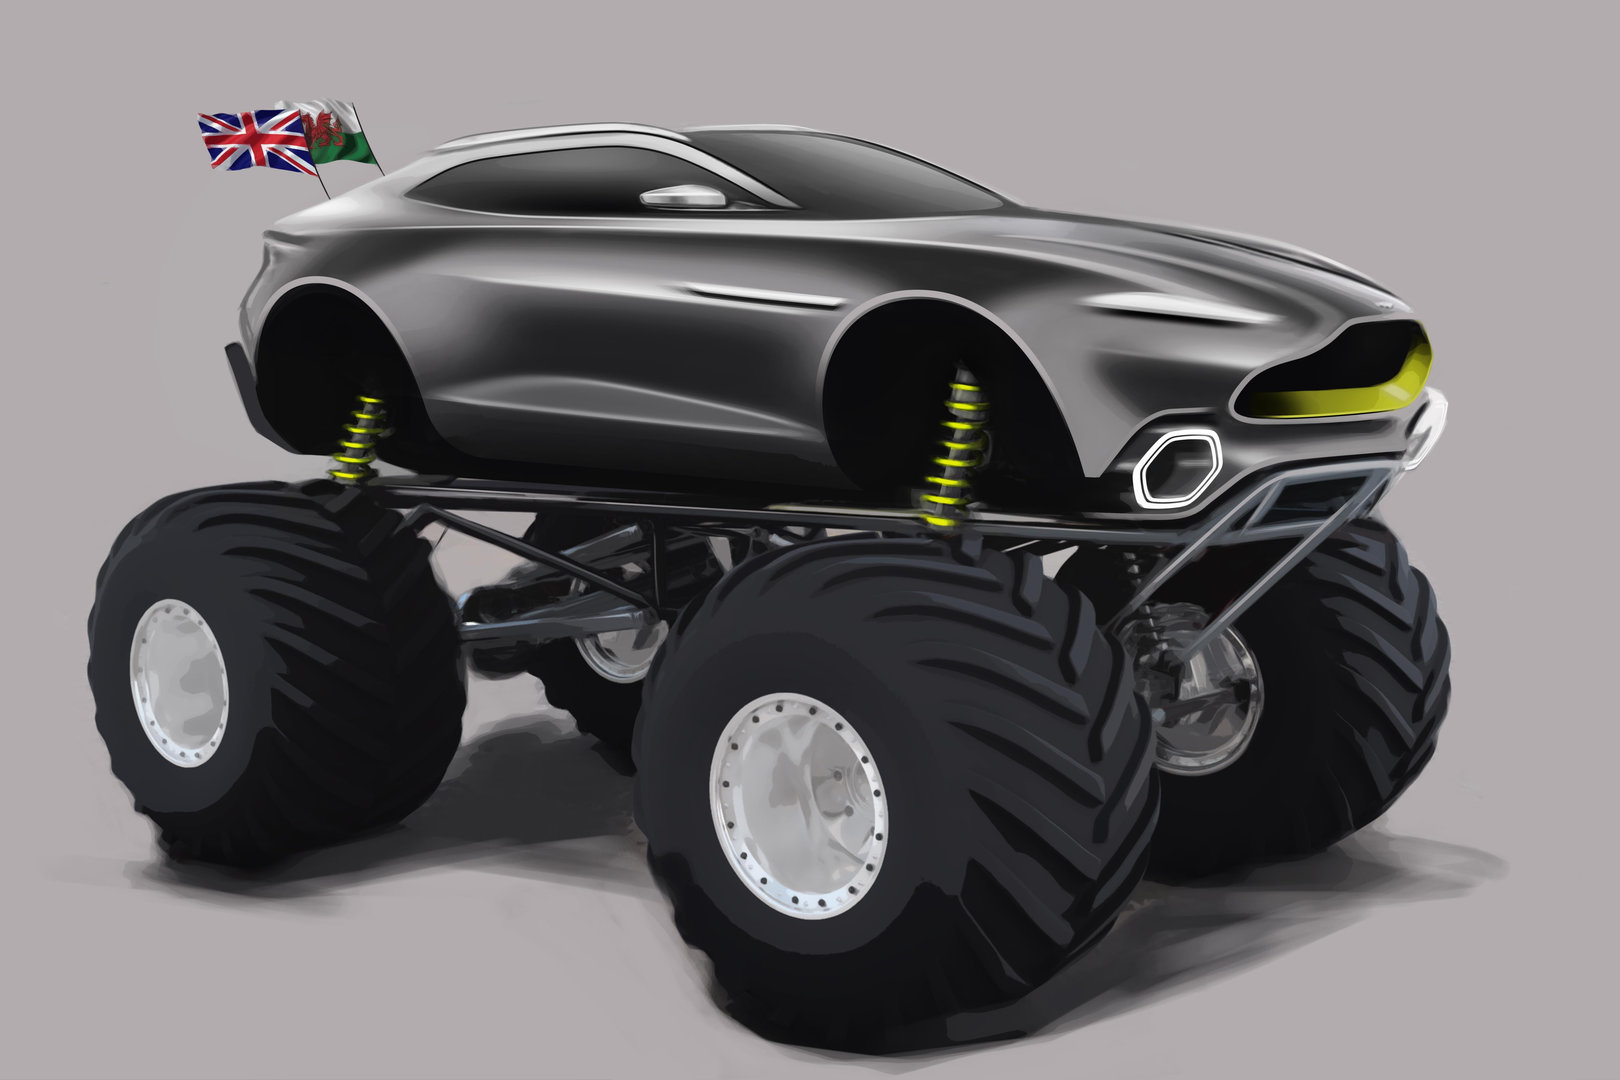 Aston Martin prepara el SUV definitivo, basado en el DBX